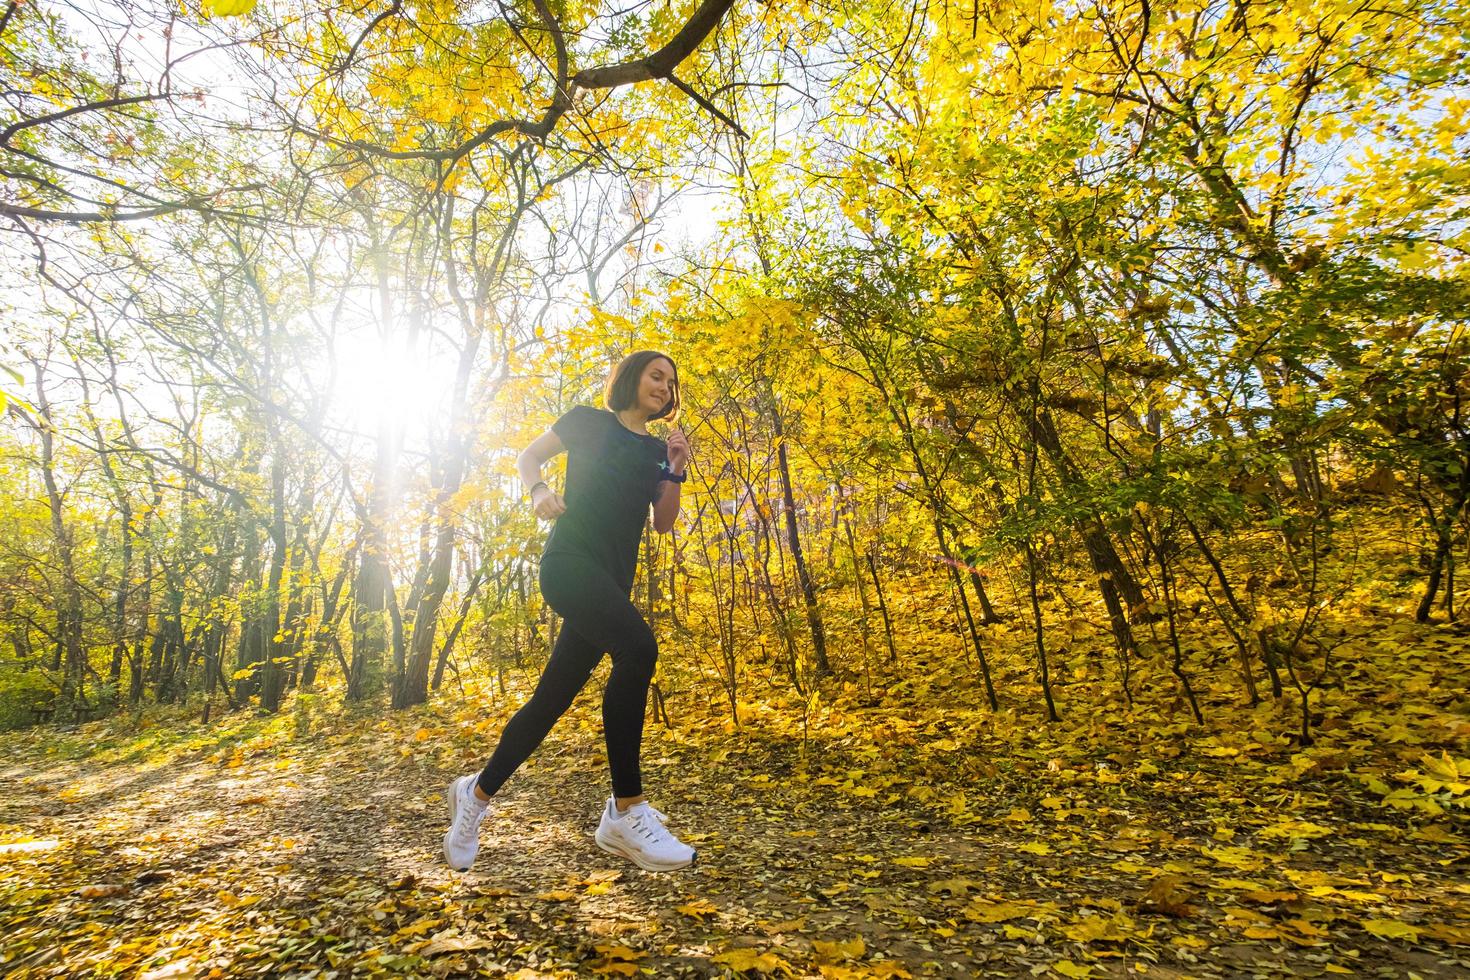 joven corredora feliz entrenando en el soleado parque de otoño foto